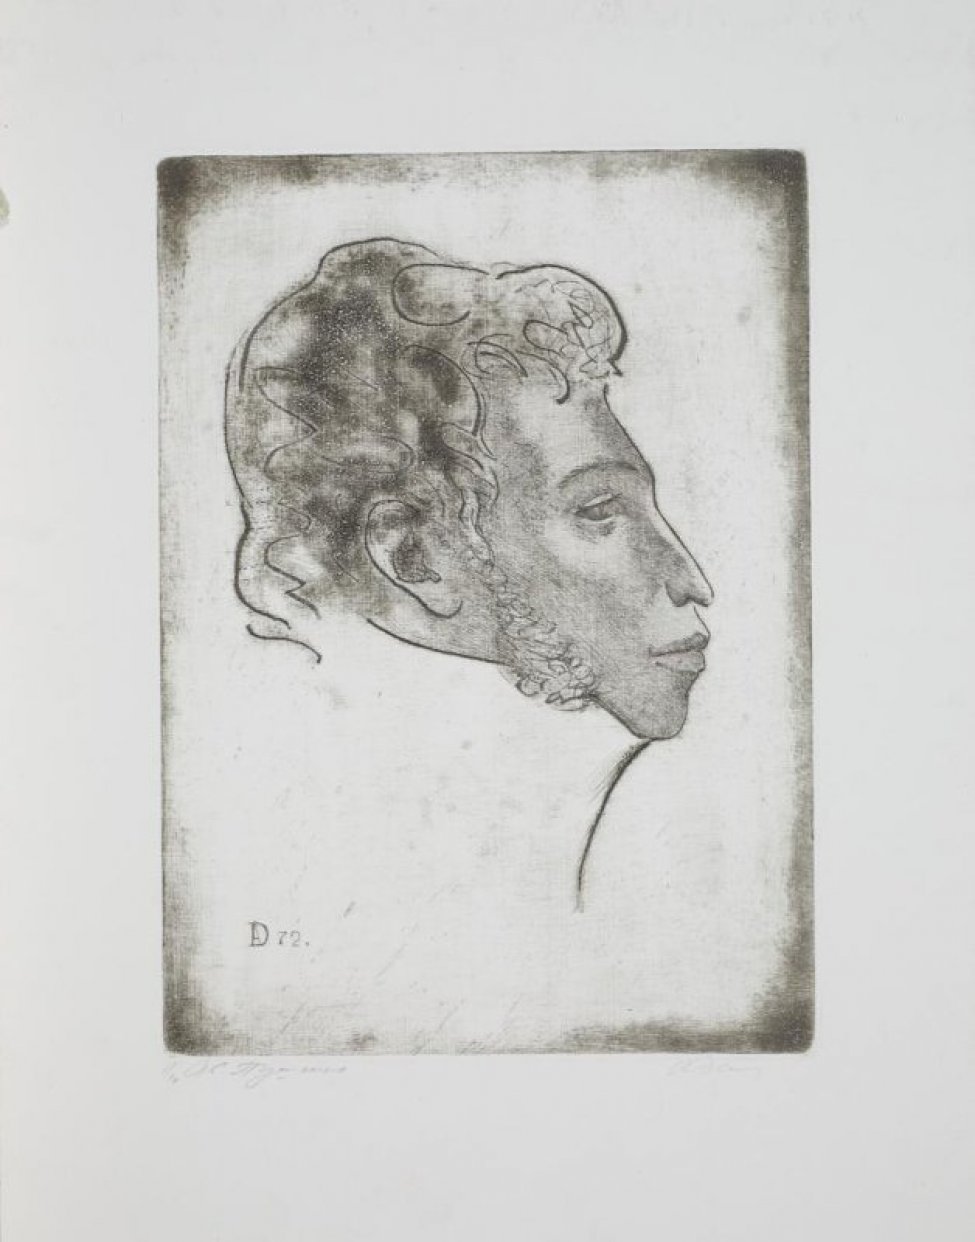 Изображена в профиль в левом повороте голова поэта- А.С.Пушкина. На изображении внизу слева гравированная монограмма: 72.